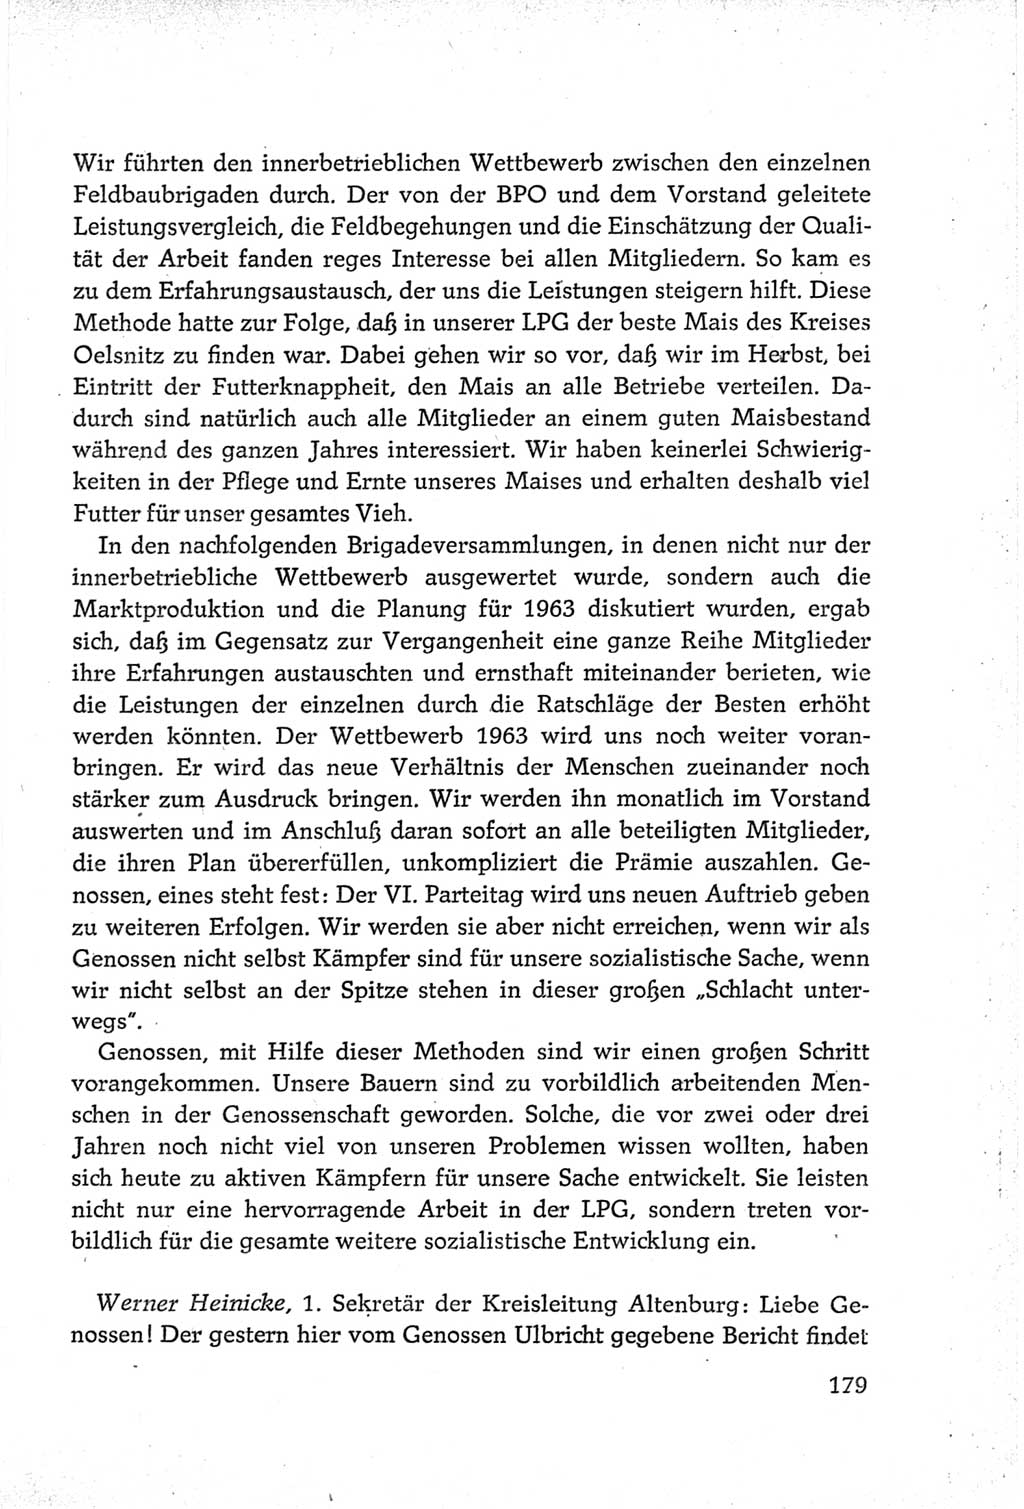 Protokoll der Verhandlungen des Ⅵ. Parteitages der Sozialistischen Einheitspartei Deutschlands (SED) [Deutsche Demokratische Republik (DDR)] 1963, Band Ⅲ, Seite 179 (Prot. Verh. Ⅵ. PT SED DDR 1963, Bd. Ⅲ, S. 179)